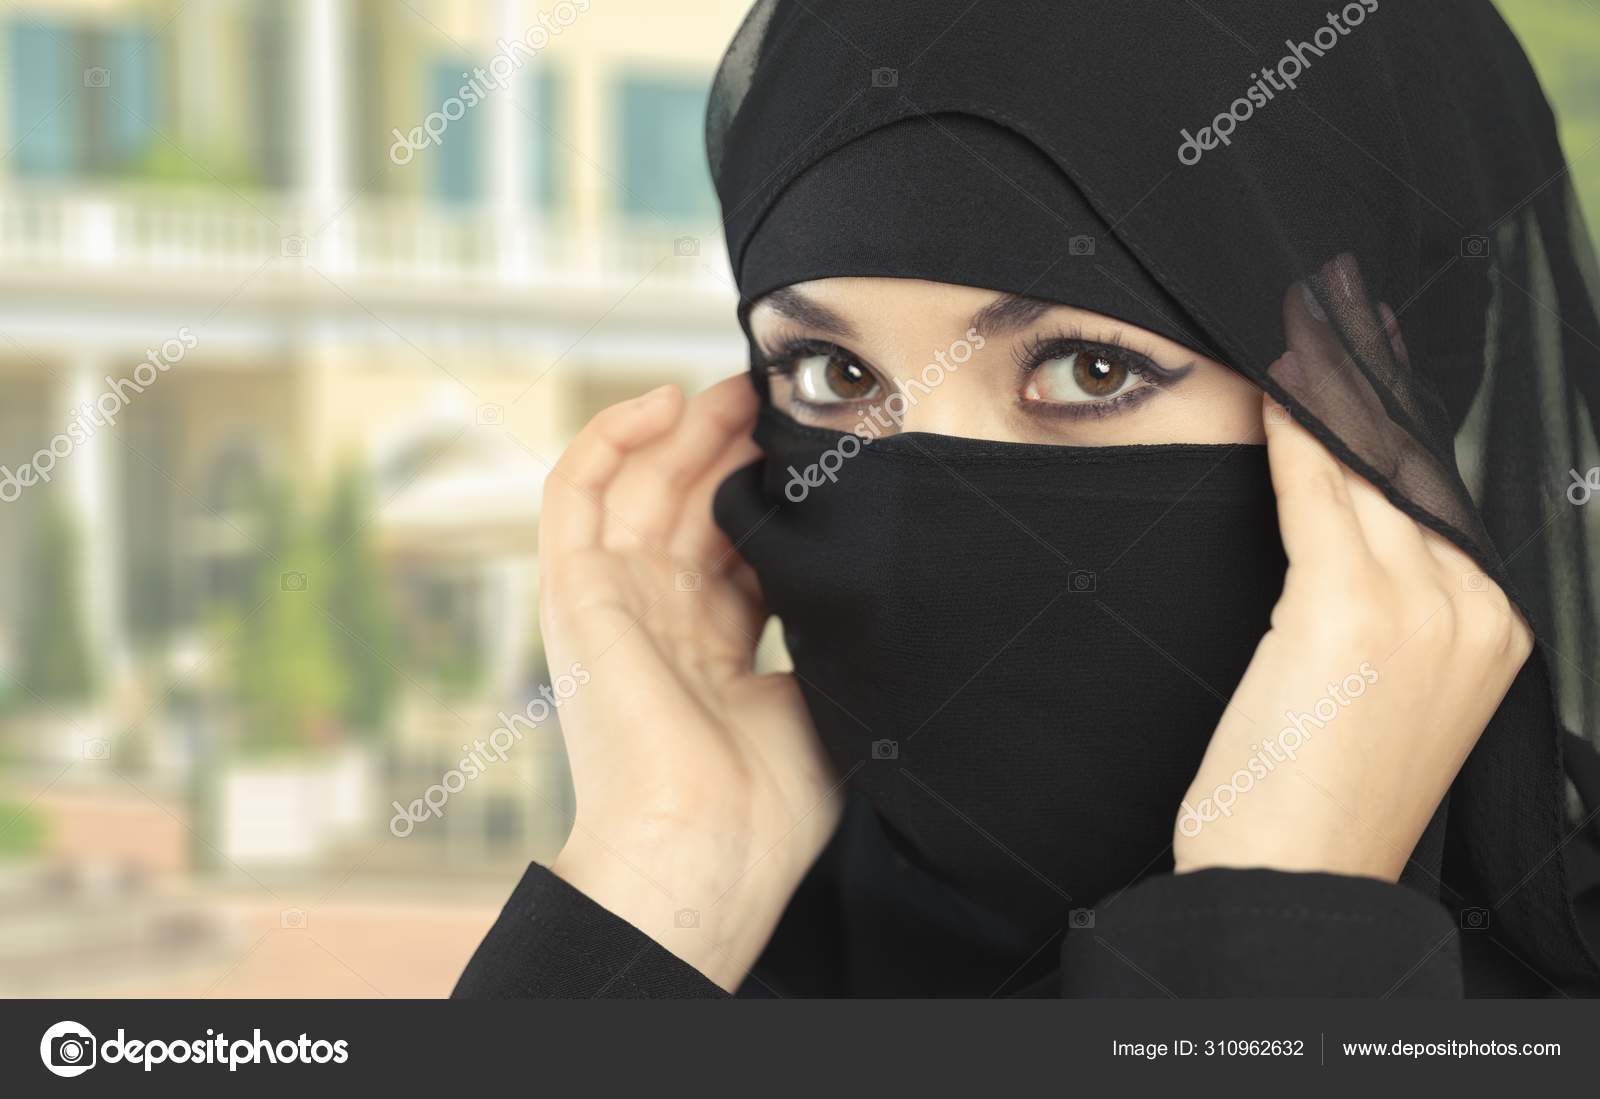 Retrato de una hermosa mujer musulmana vestida con ropa islámica  tradicional y cubriéndose la cabeza.: fotografía de stock © vershinin.photo  #442420960